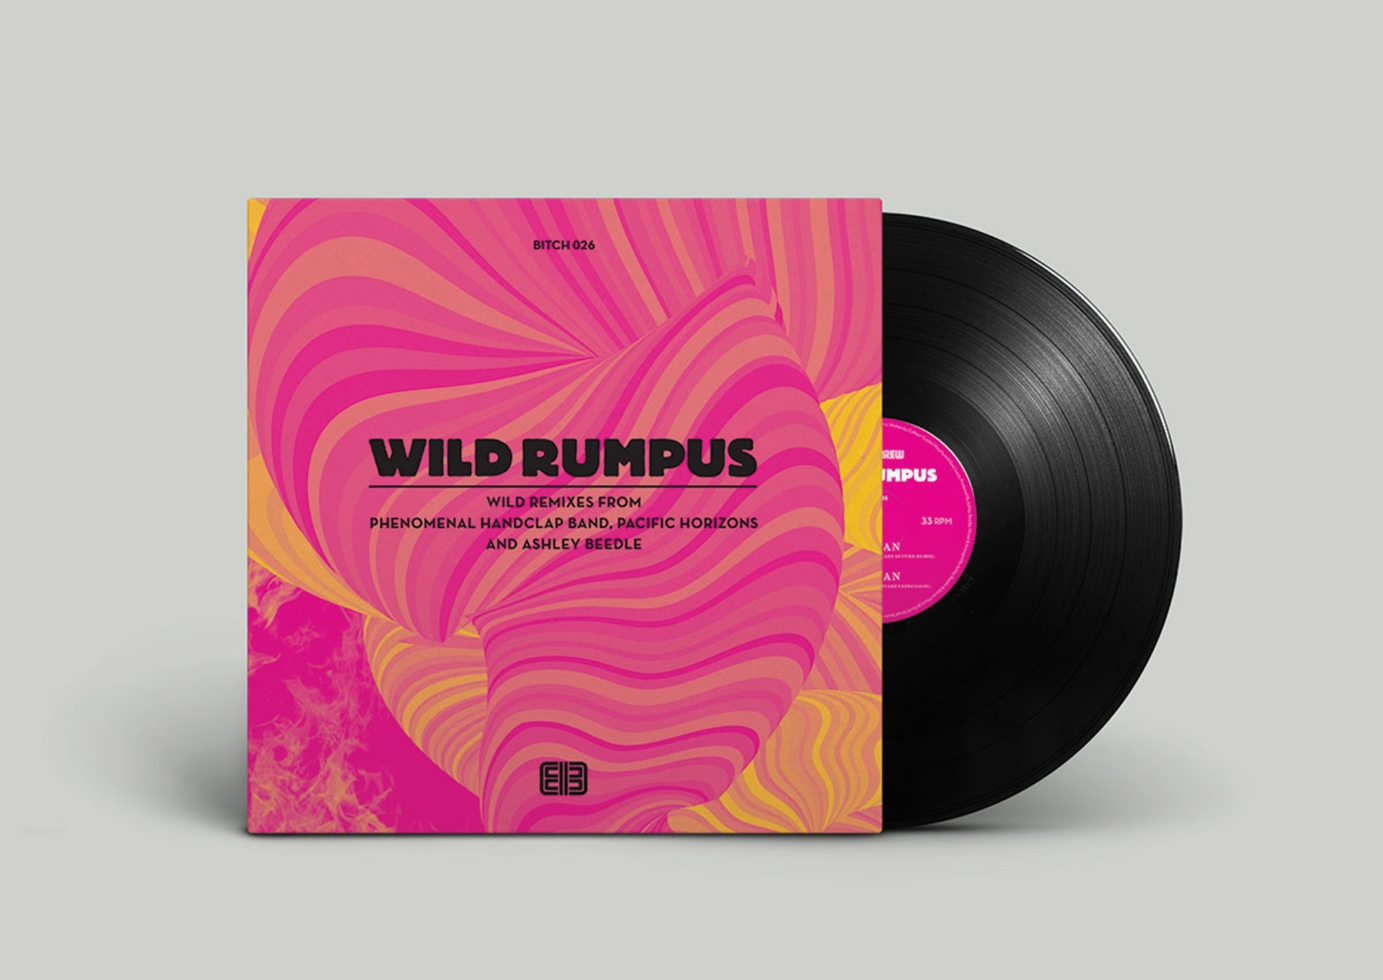 WILD RUMPUS Musical Blaze-Up LP + EP